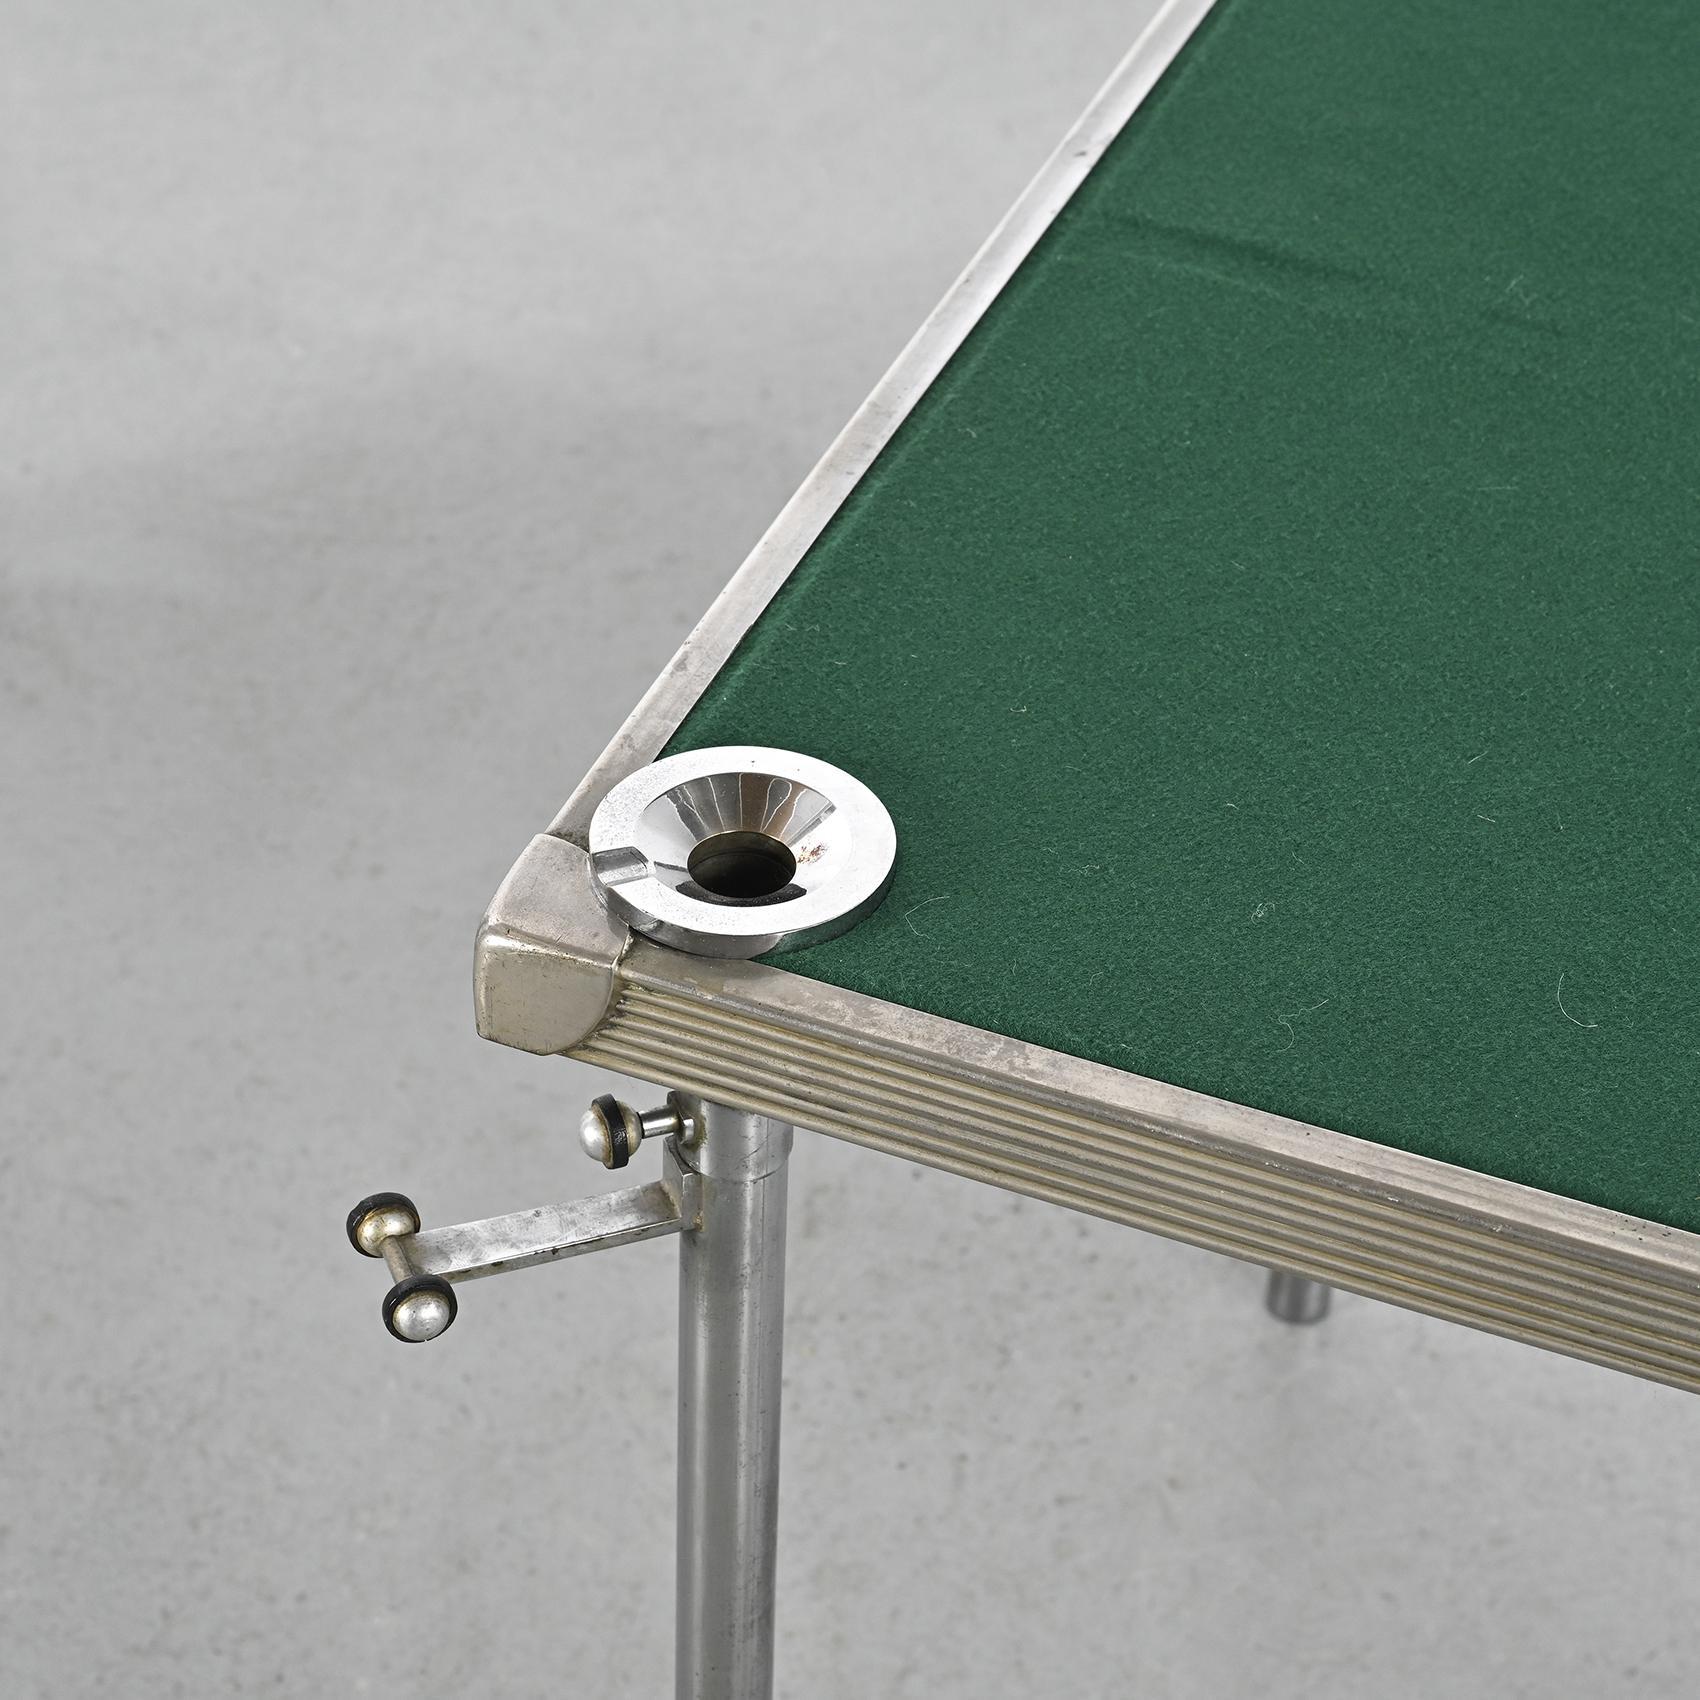 Retournez dans les années 1940 avec cette table de jeu sophistiquée en métal chromé, attribuée à Jean-Boris LACROIX.

La base tubulaire amovible se range sans problème sous le plateau de la table, offrant ainsi une fonctionnalité pratique. La table